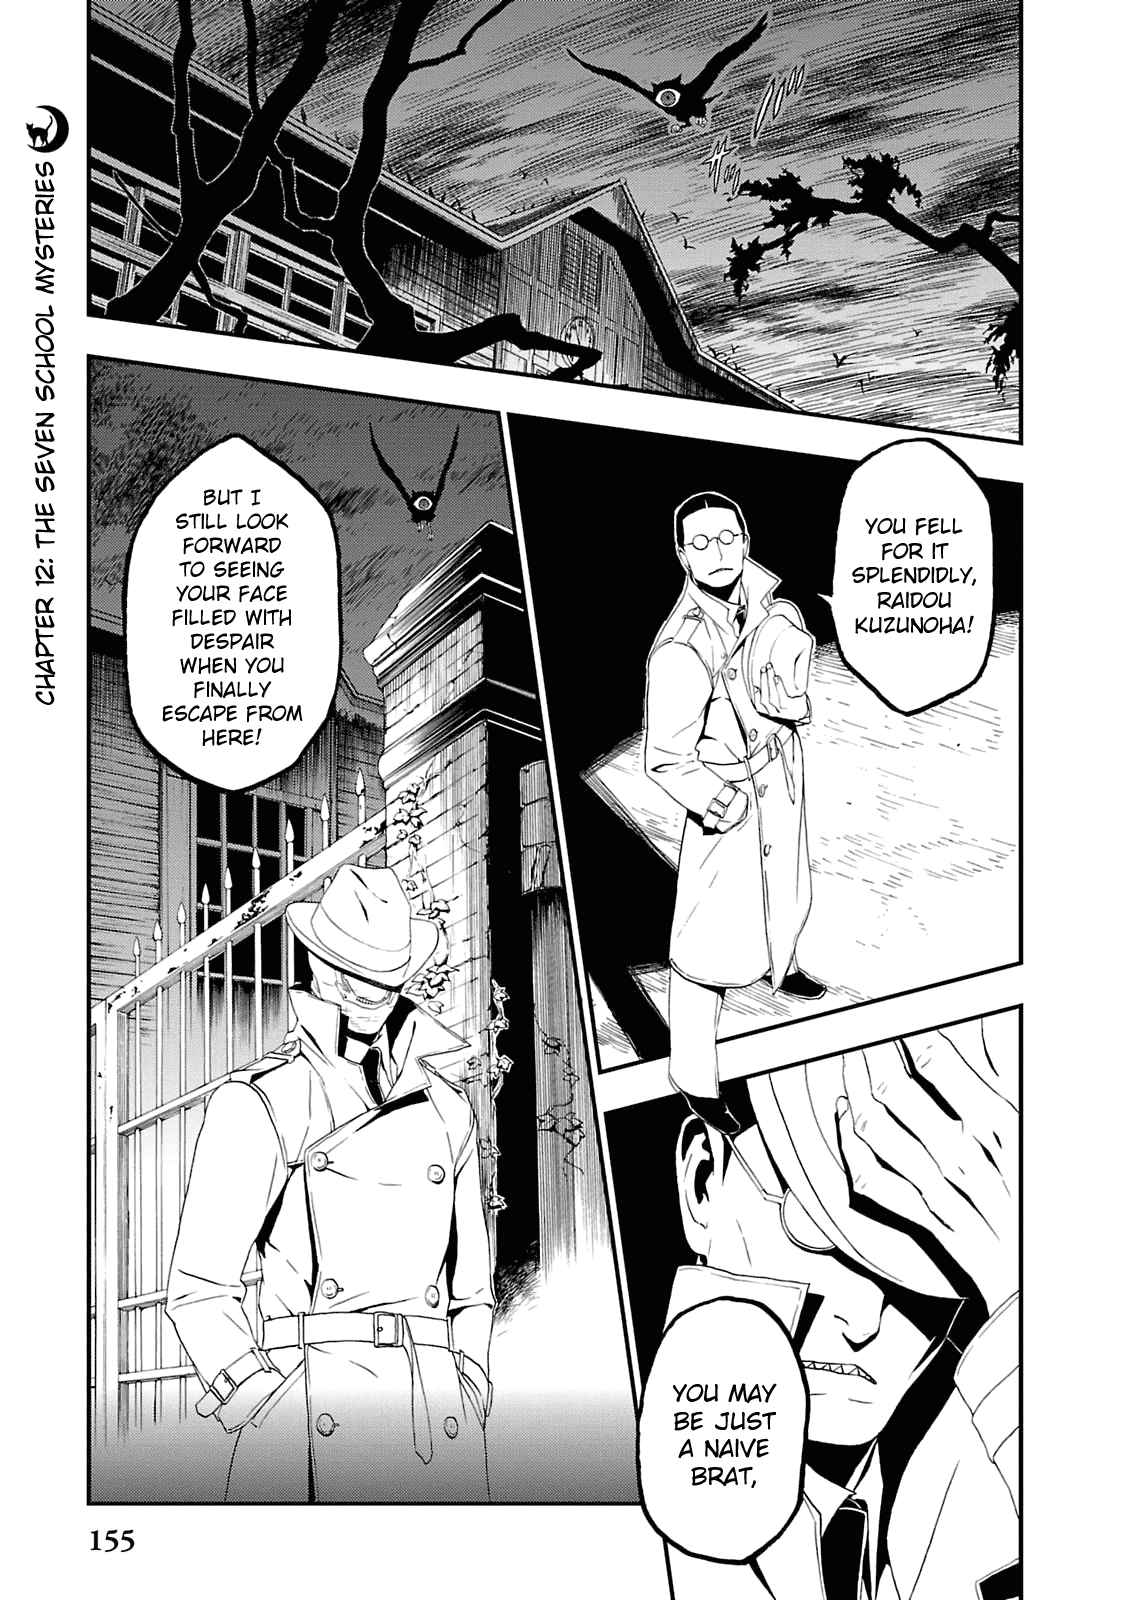 Shin Megami Tensei: Devil Summoner Kuzunoha Raidou Tai Kodokuno Marebito Vol. 2 Ch. 12 The Seven School Mysteries